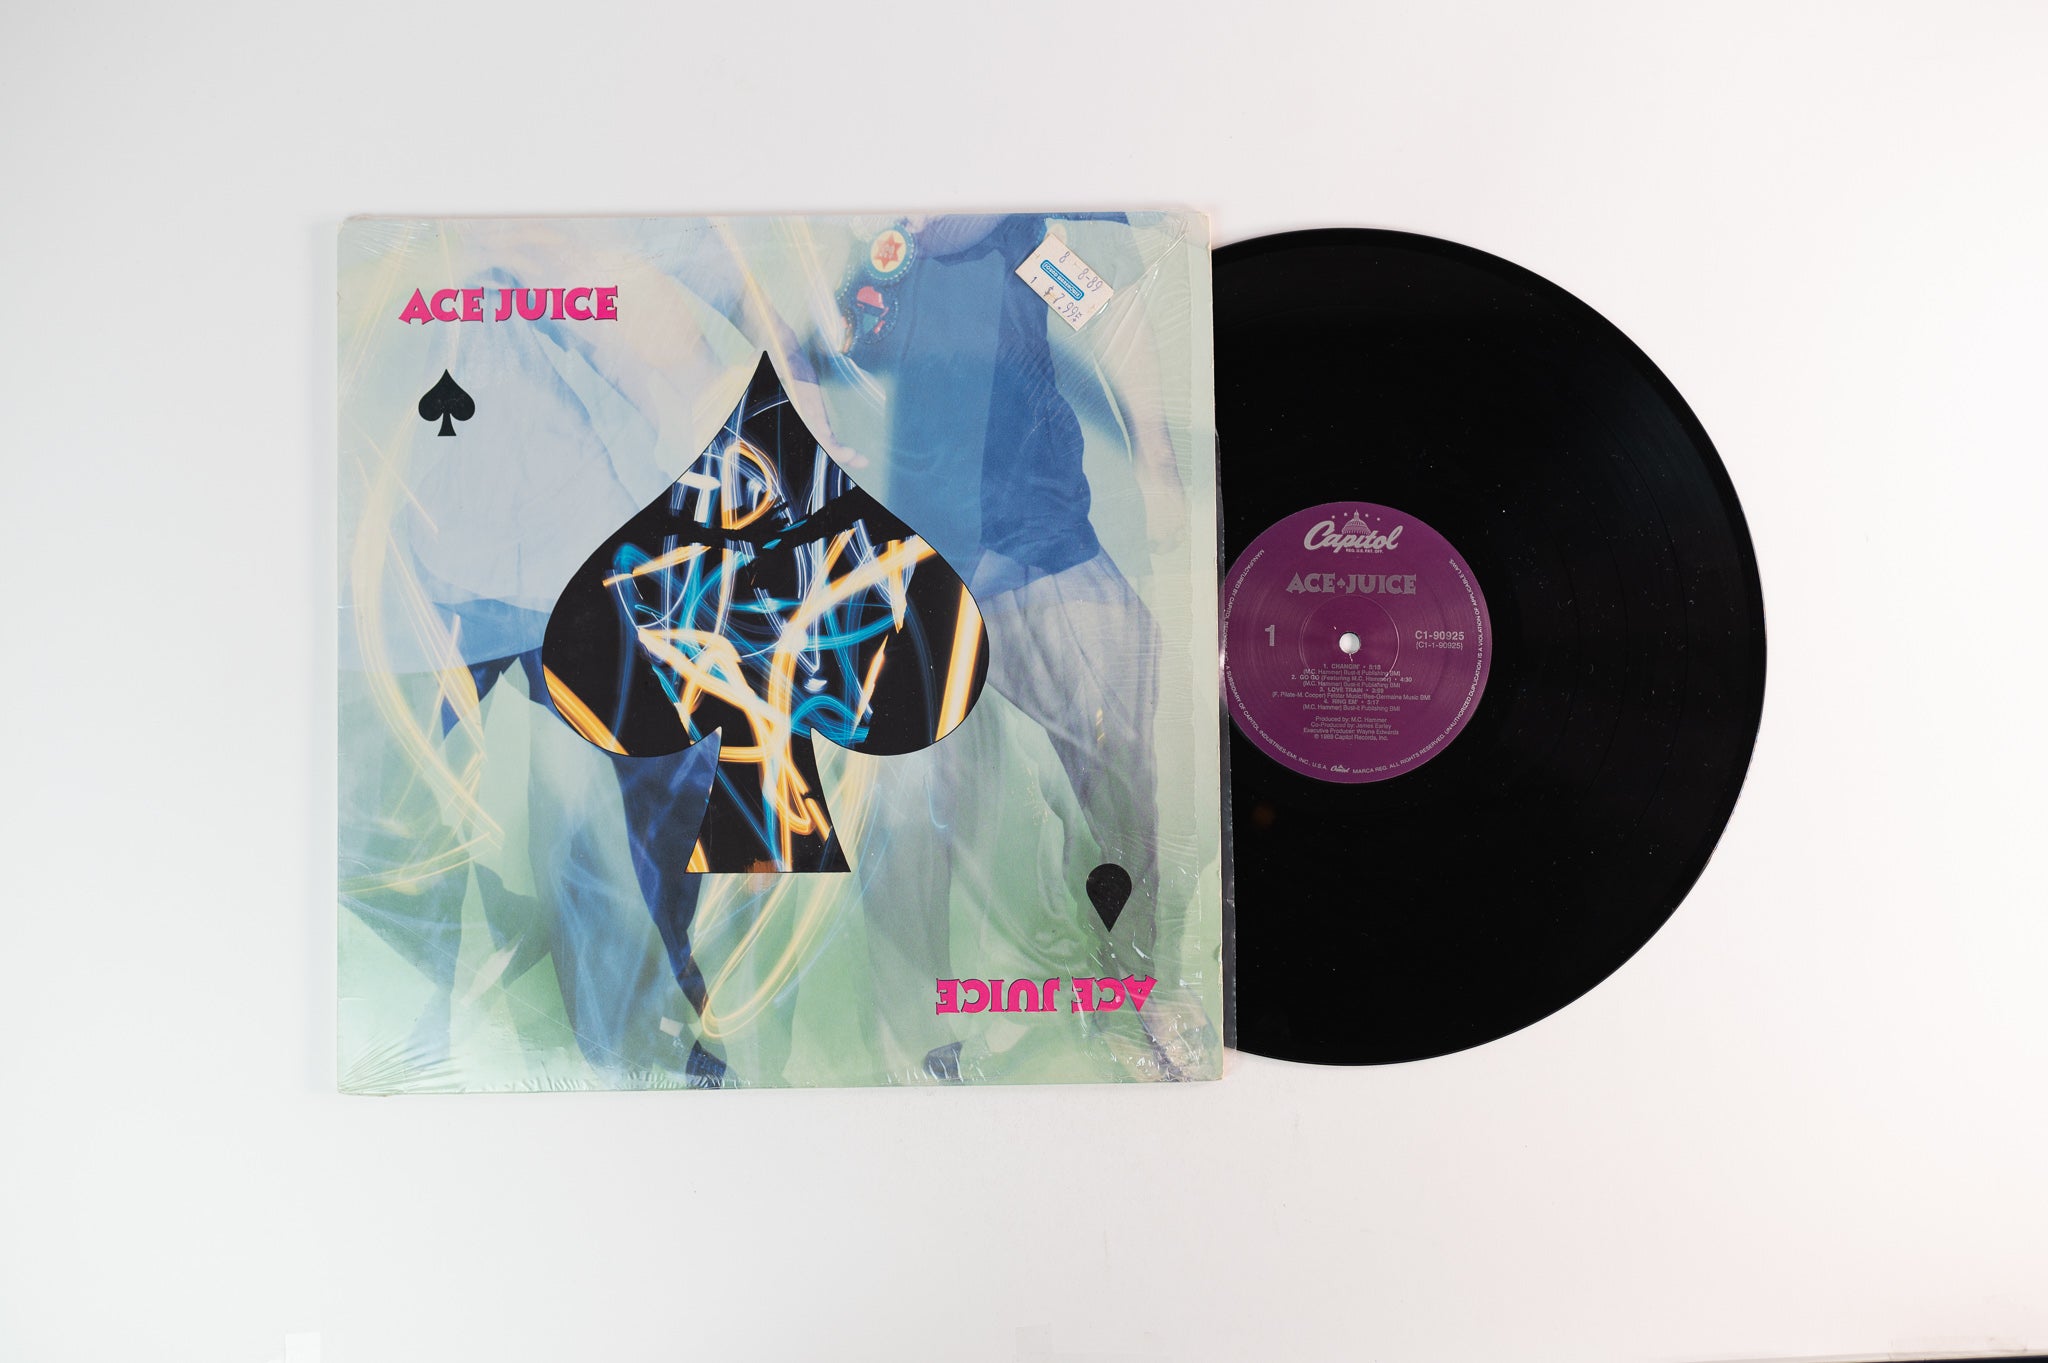 Ace Juice - Ace Juice on Capitol Records